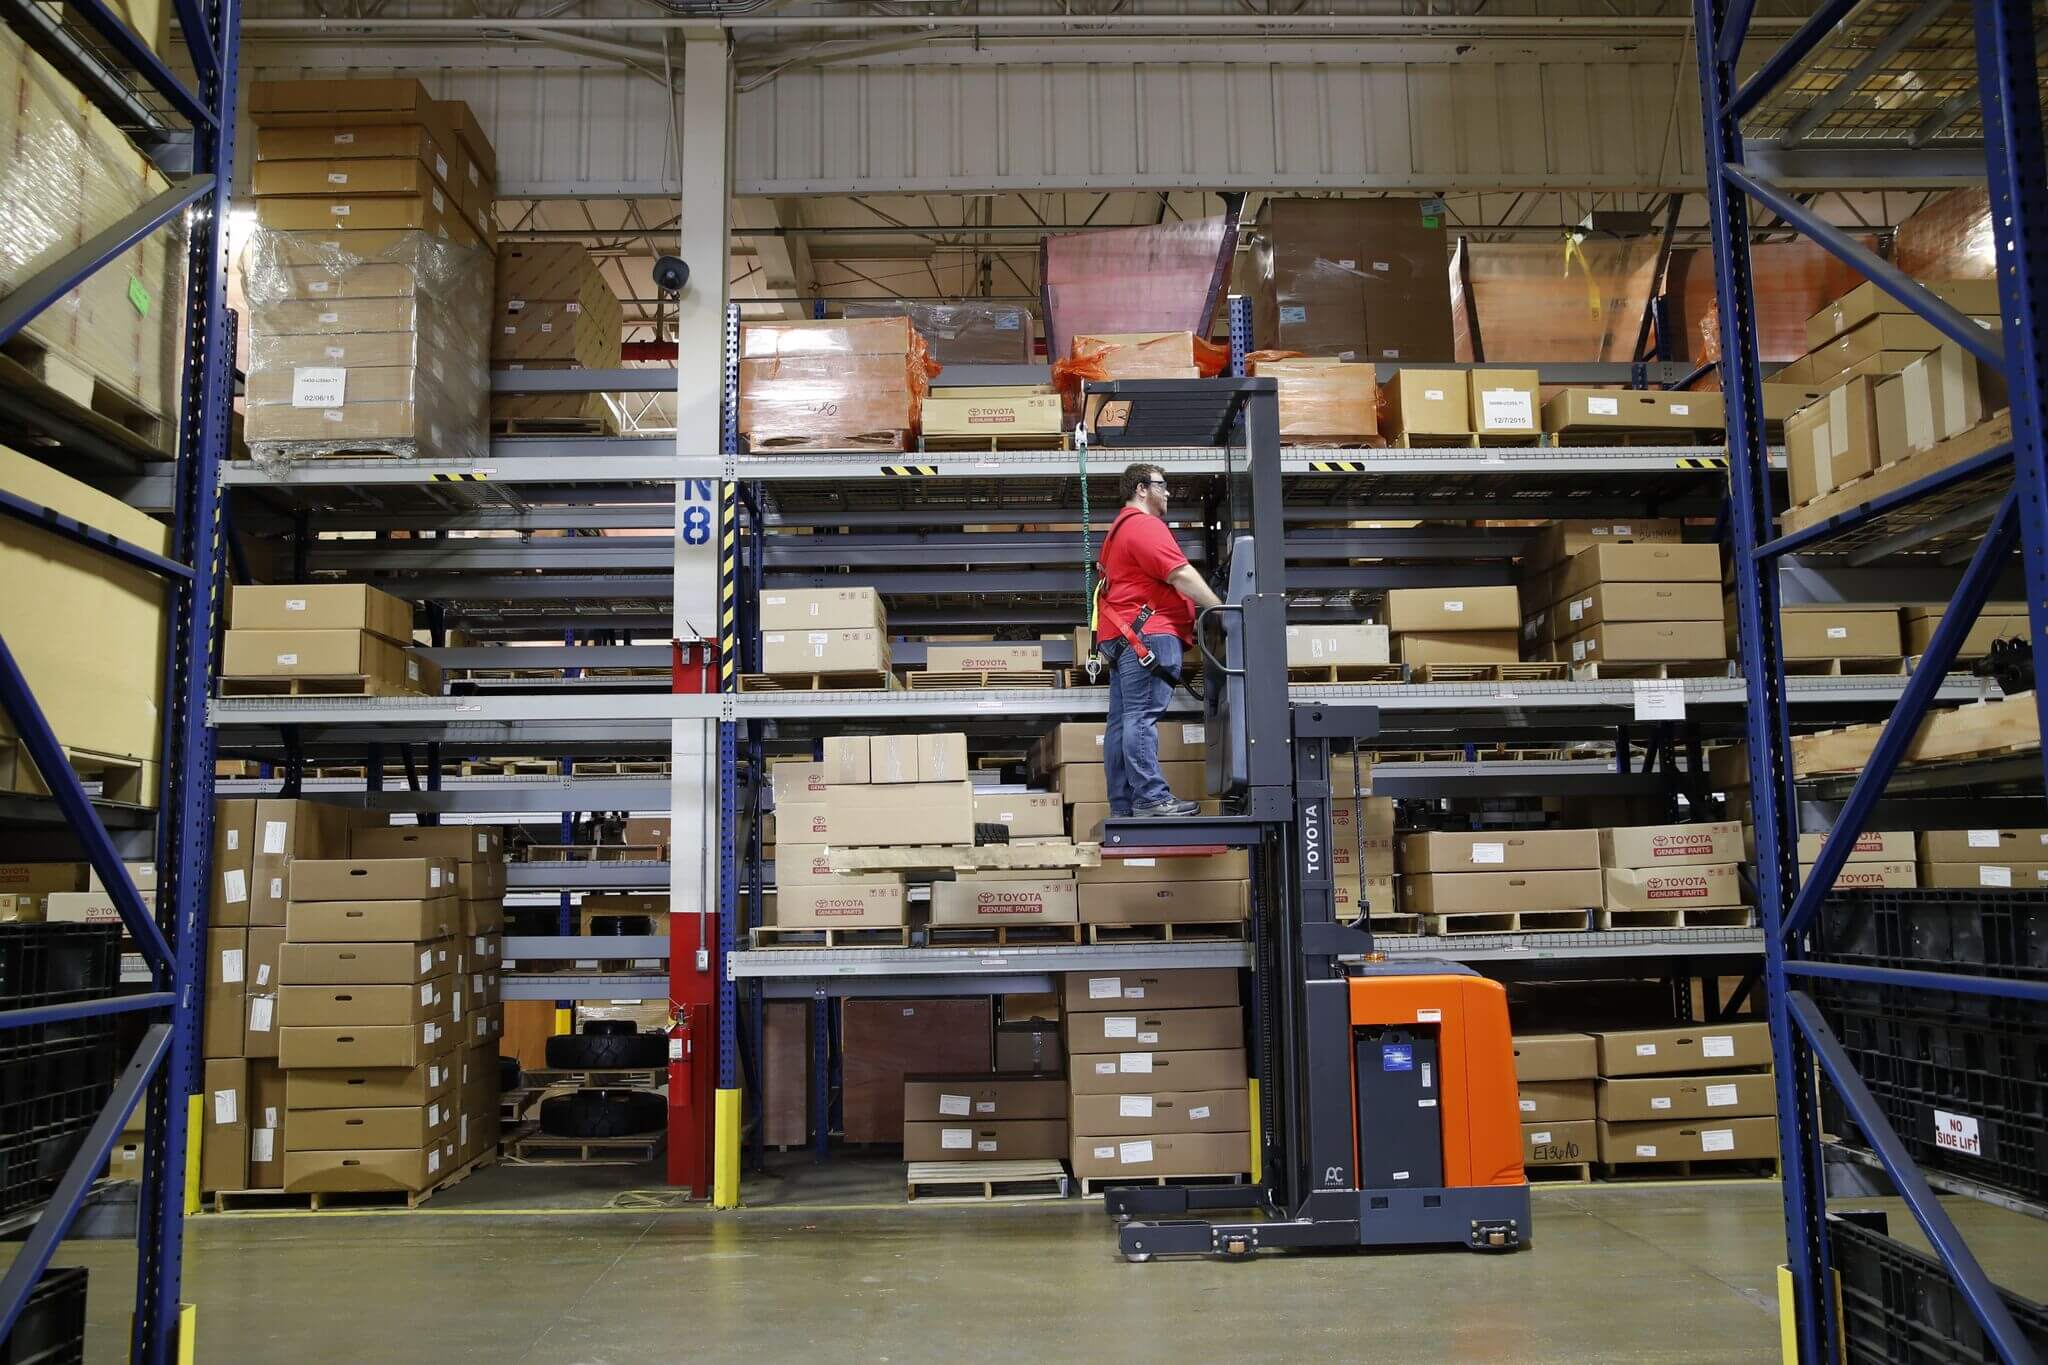 Forklift order picker, Lifting equipment for warehouse